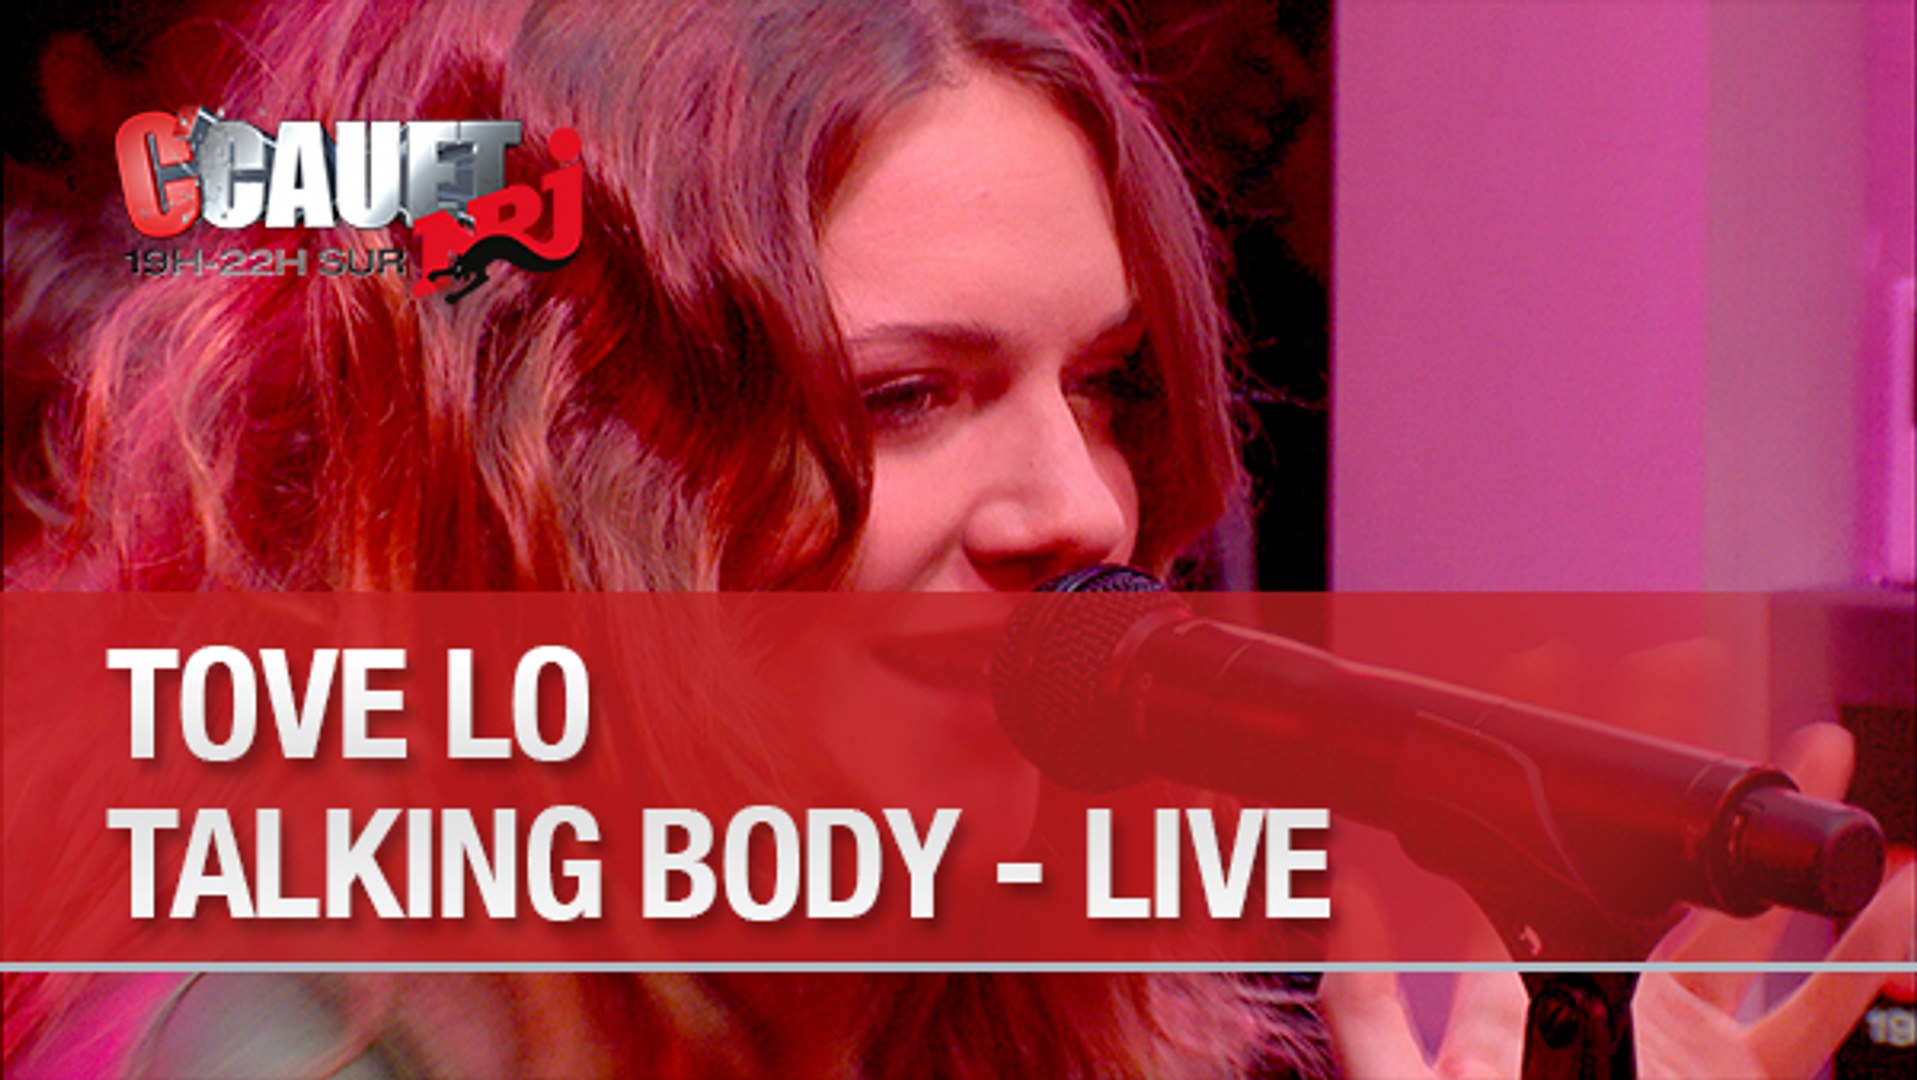 Tove Lo - Talking Body - Live - C'Cauet sur NRJ - Vidéo Dailymotion